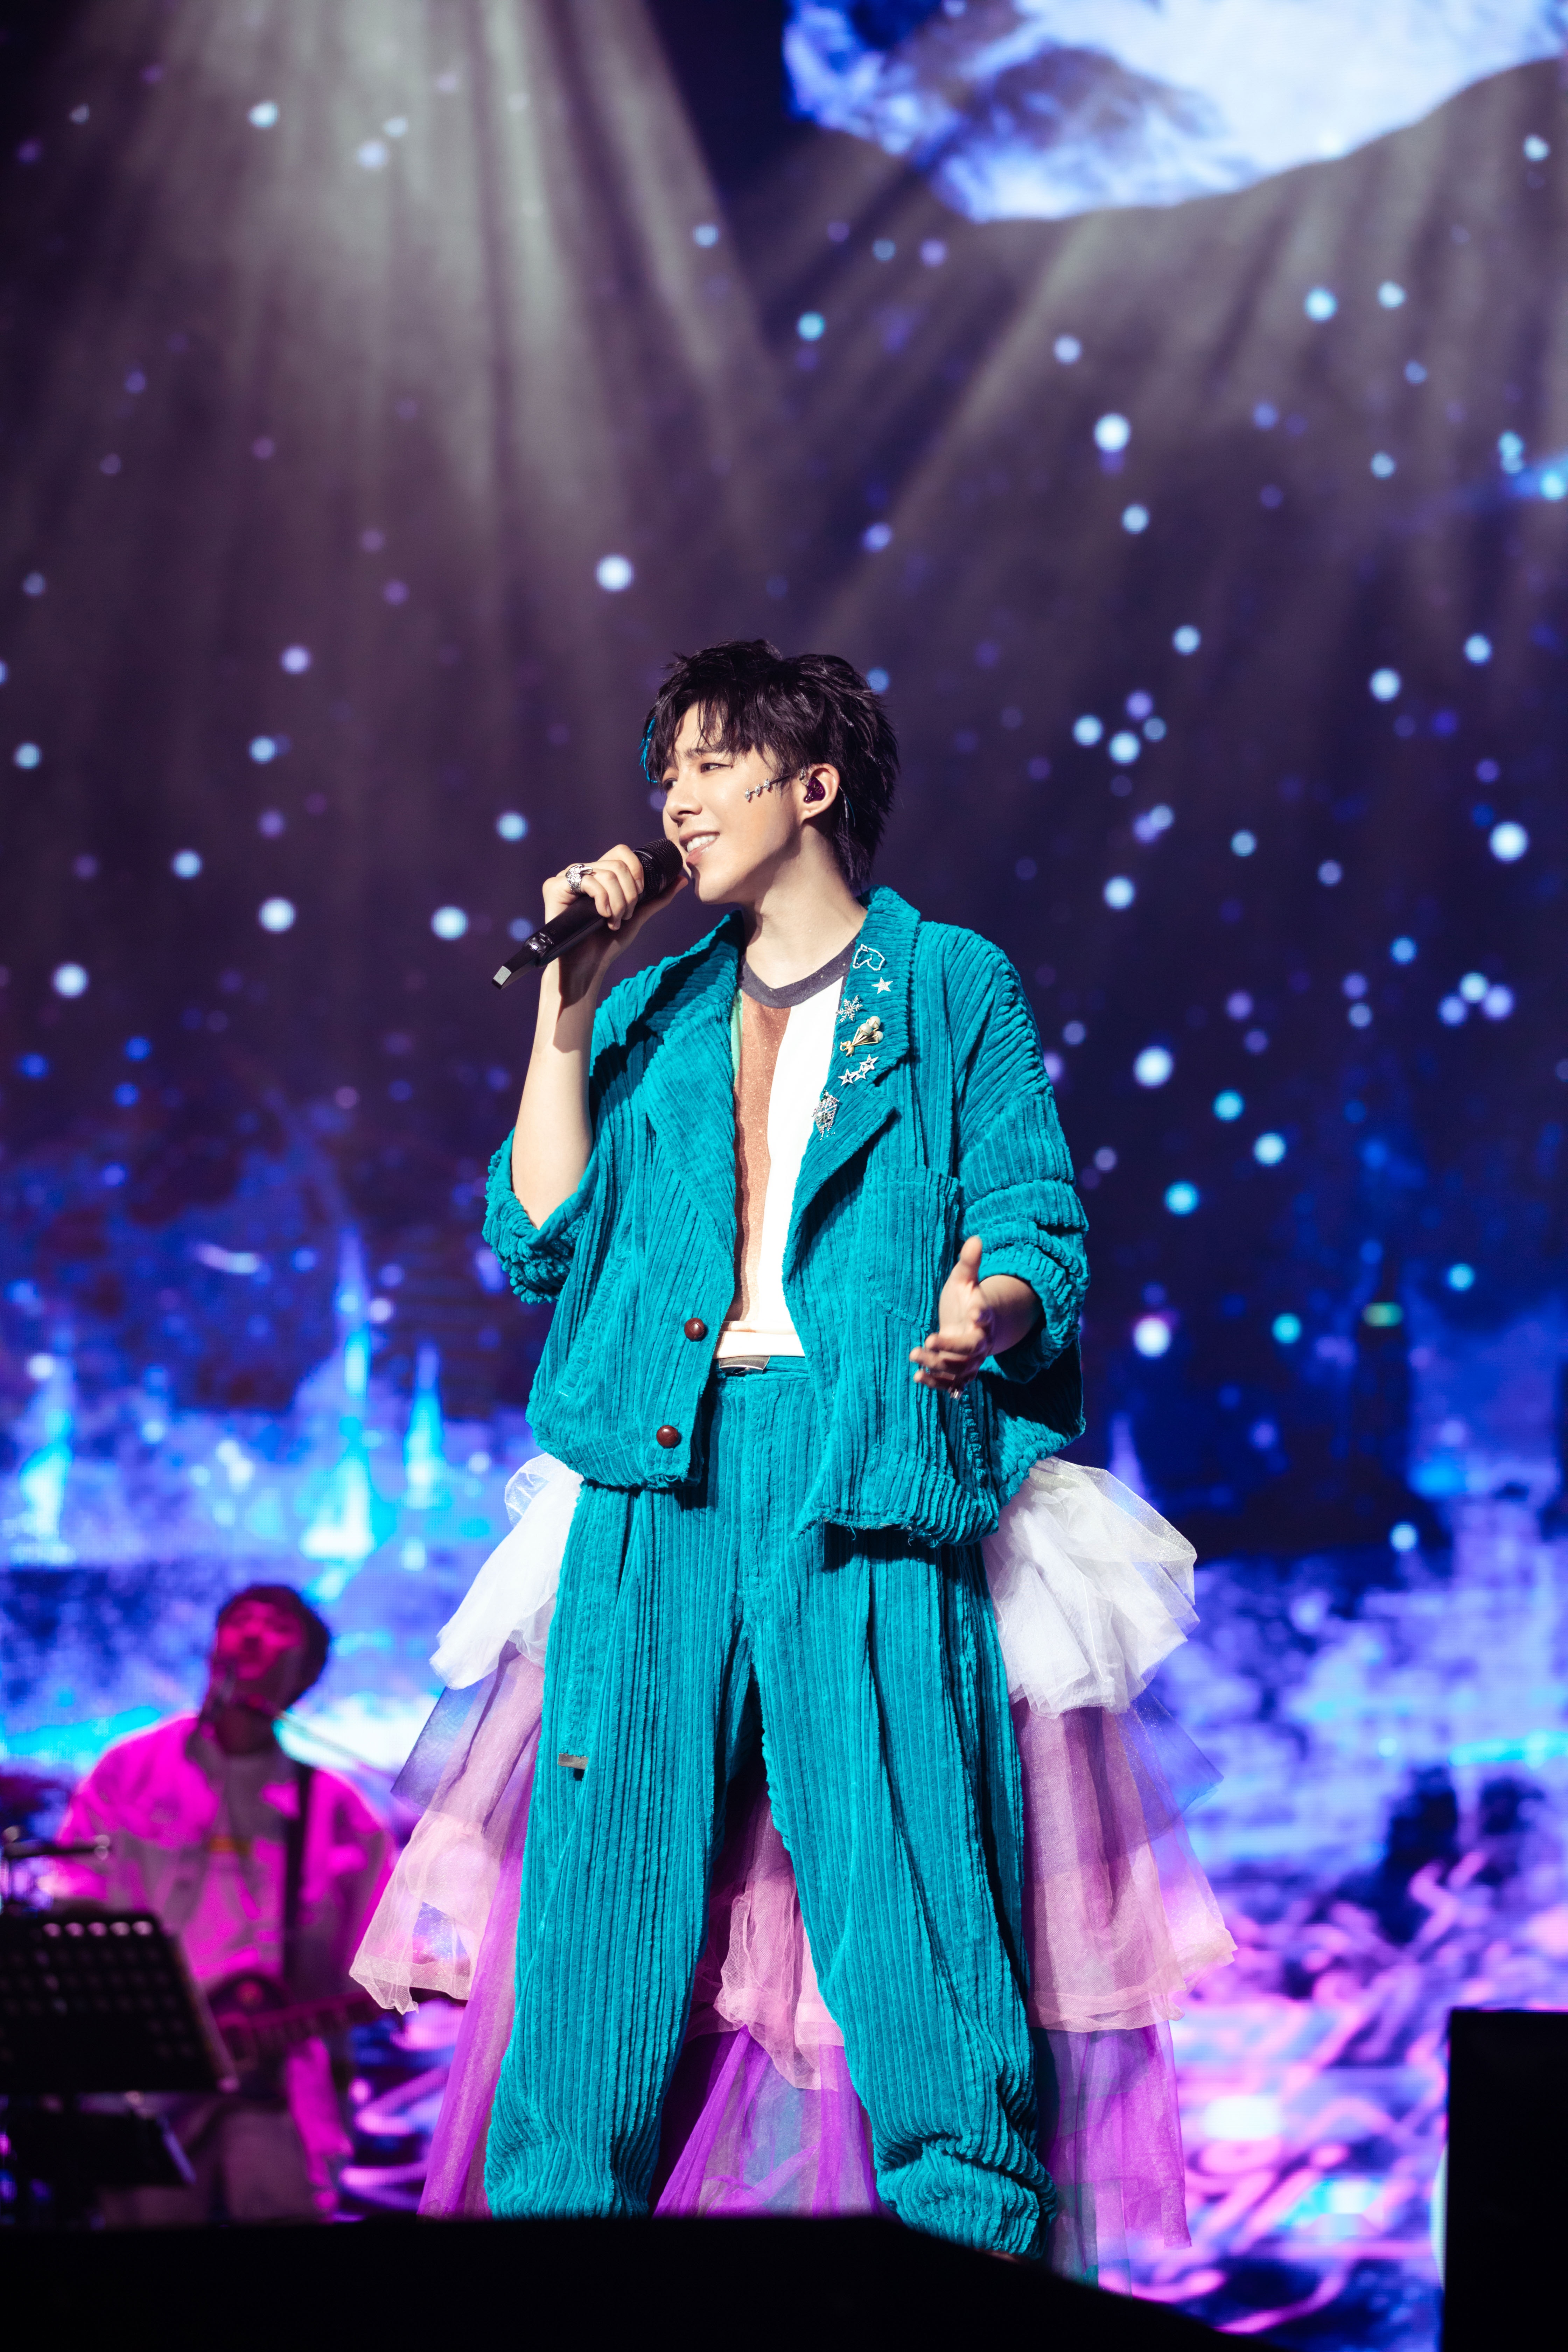 摩登兄弟上海演唱会上,刘宇宁一身彩色婚纱裤造型亮相,据悉这也是为了